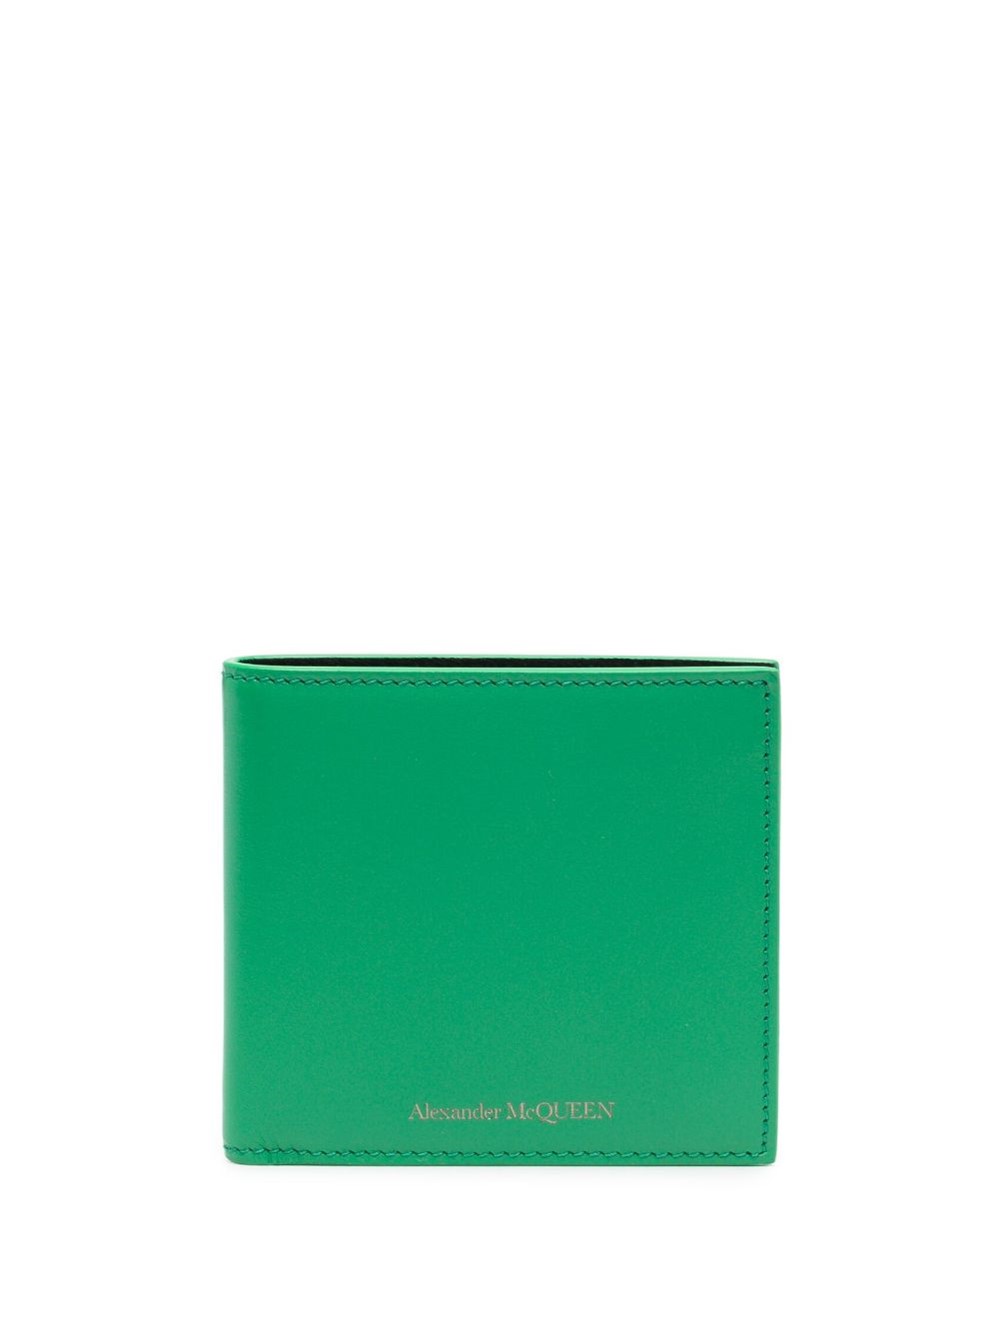 Alexander Mcqueen Wallet In Green